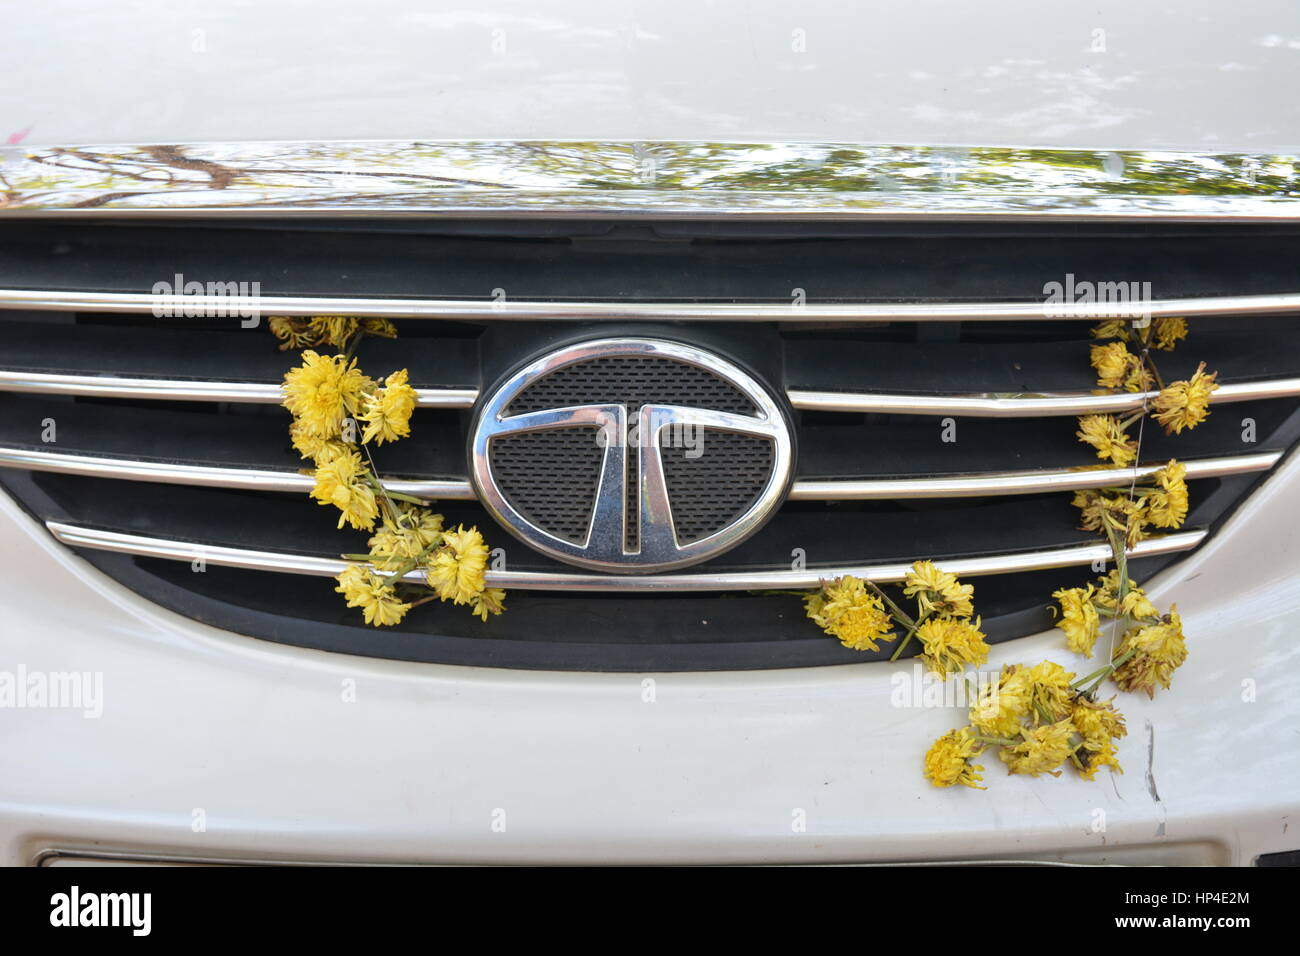 Kochi, Indien - 24. Oktober 2015 - Blumen auf Tata Auto in Indien im Rahmen des Aberglaubens, Autounfälle zu verhindern Stockfoto